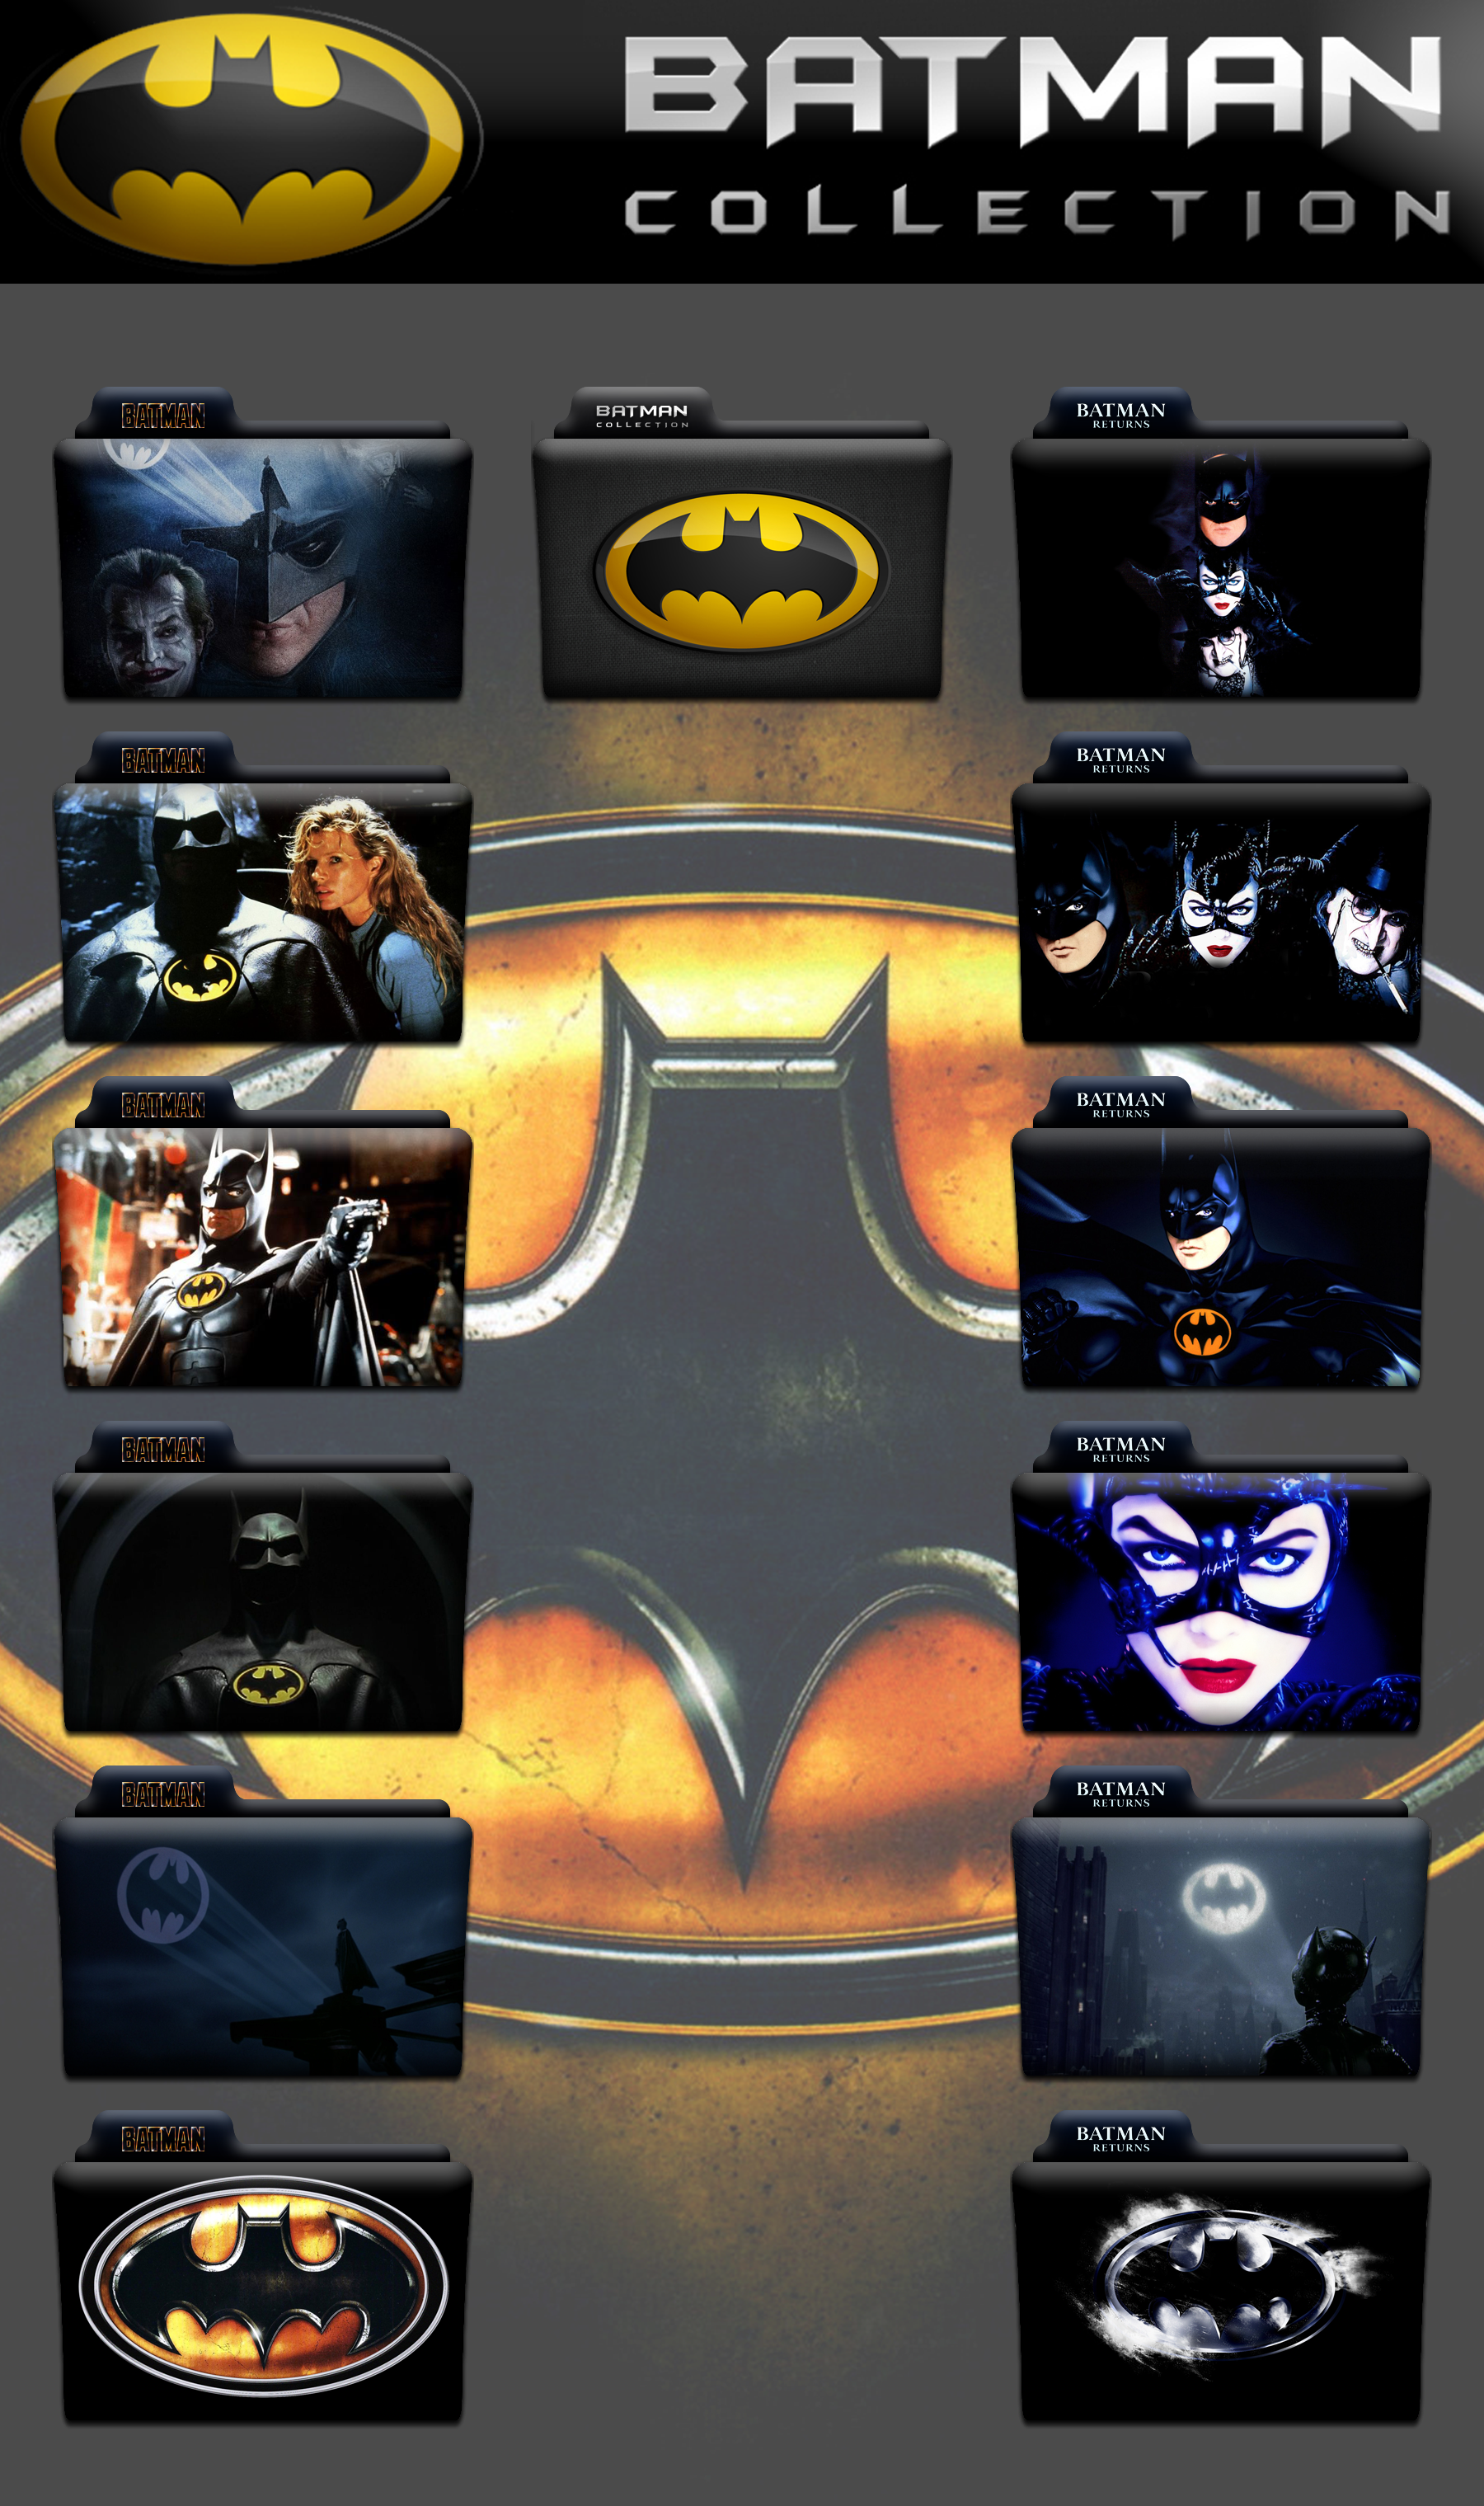 Tim Burton S Batman Collection Folder Icon Pack By Wchannel96 On Deviantart